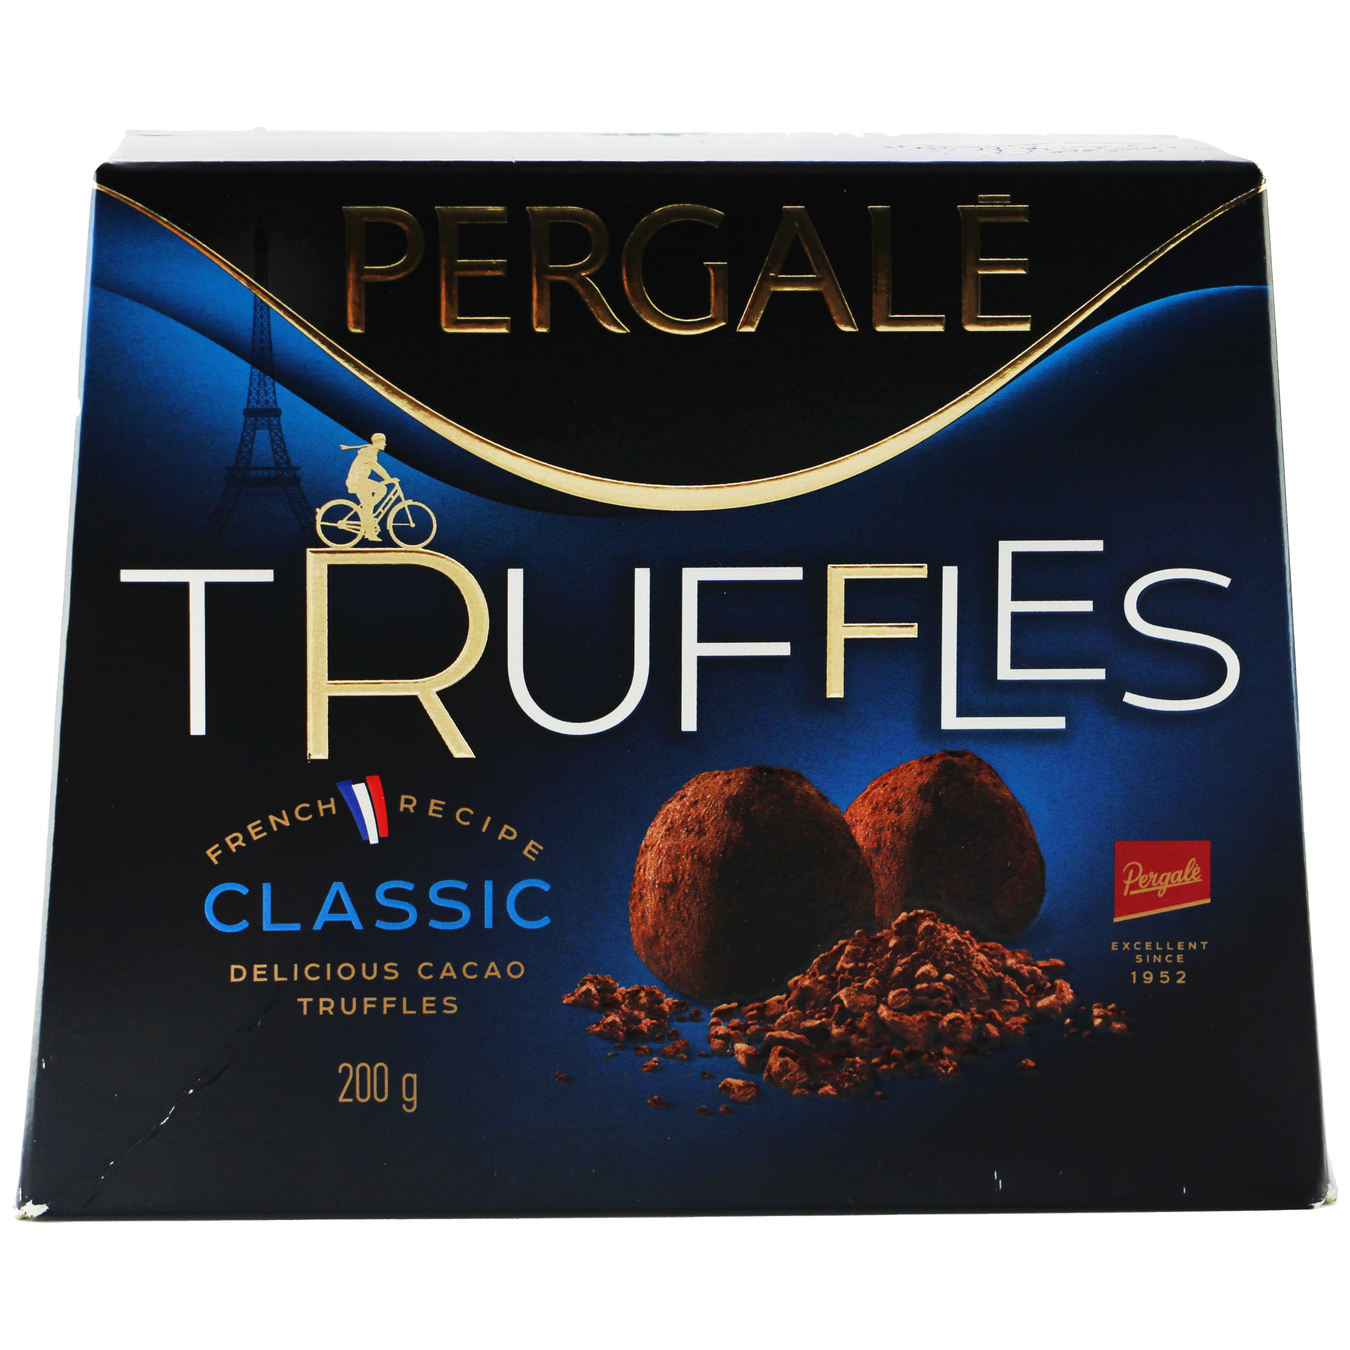 Цукерки Pergale Truffles Classic 200г